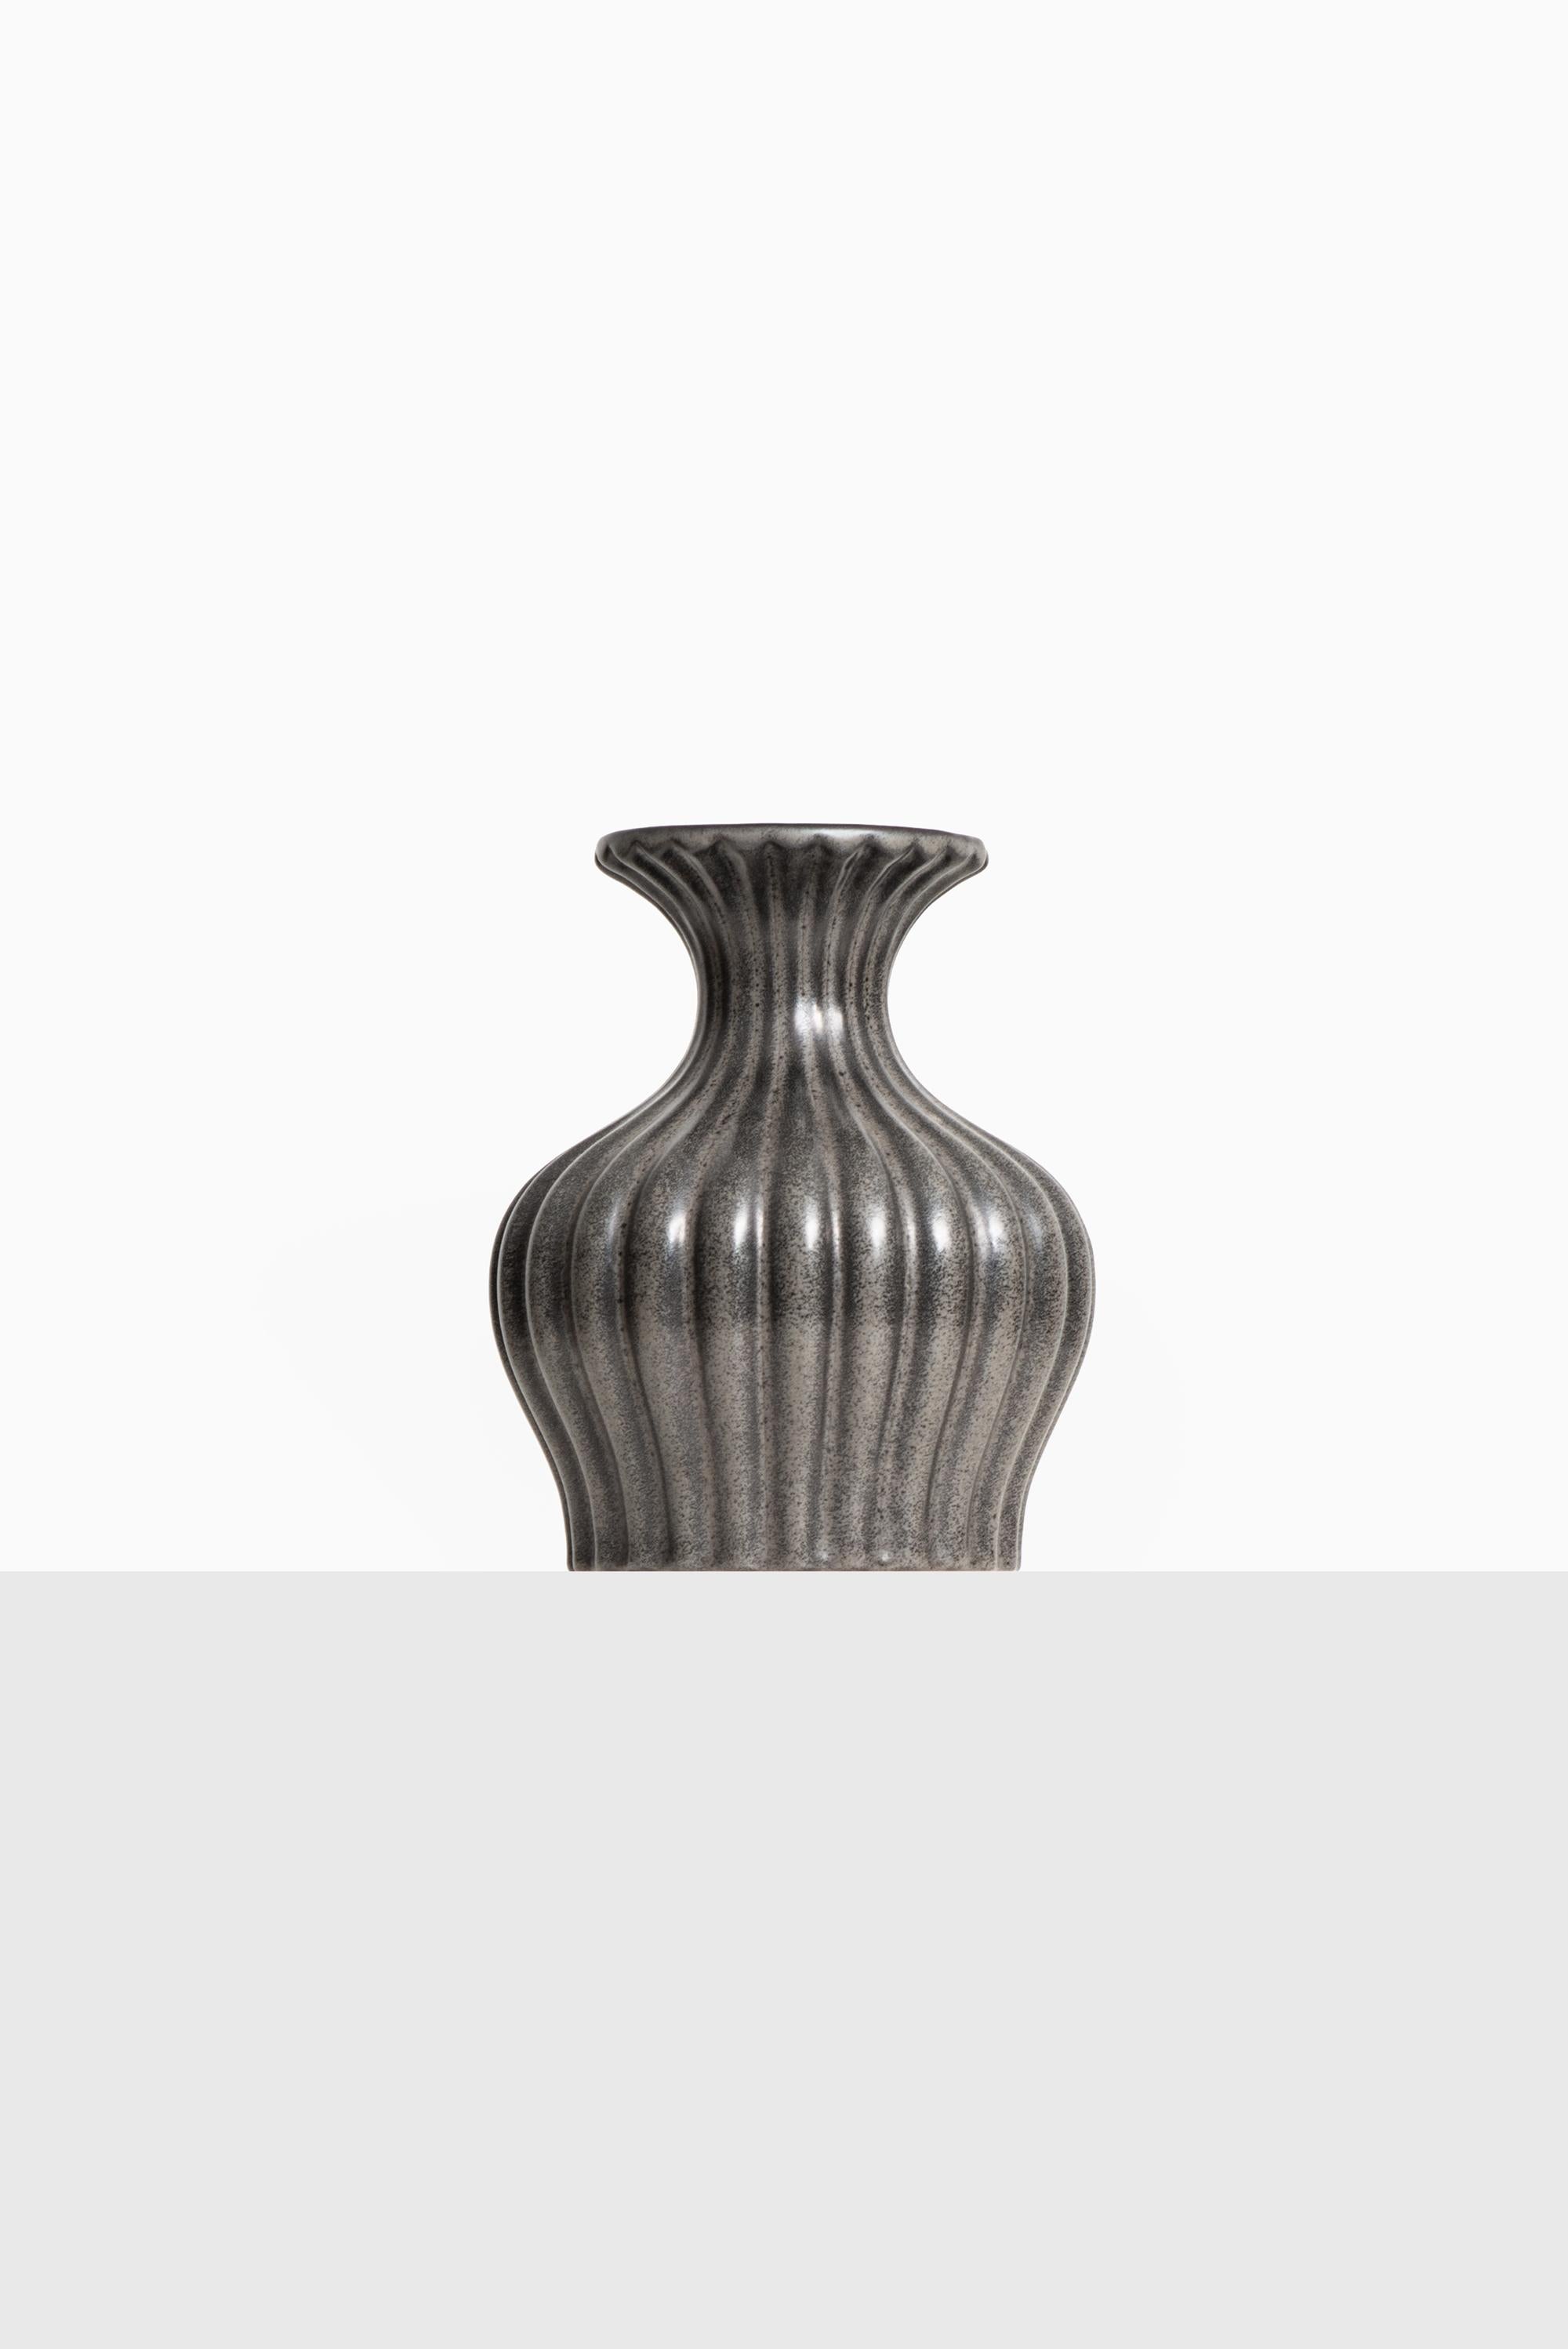 Vase en céramique émaillée conçu par Ewald Dahlskog. Produit par Bobergs Fajansfabrik en Suède.